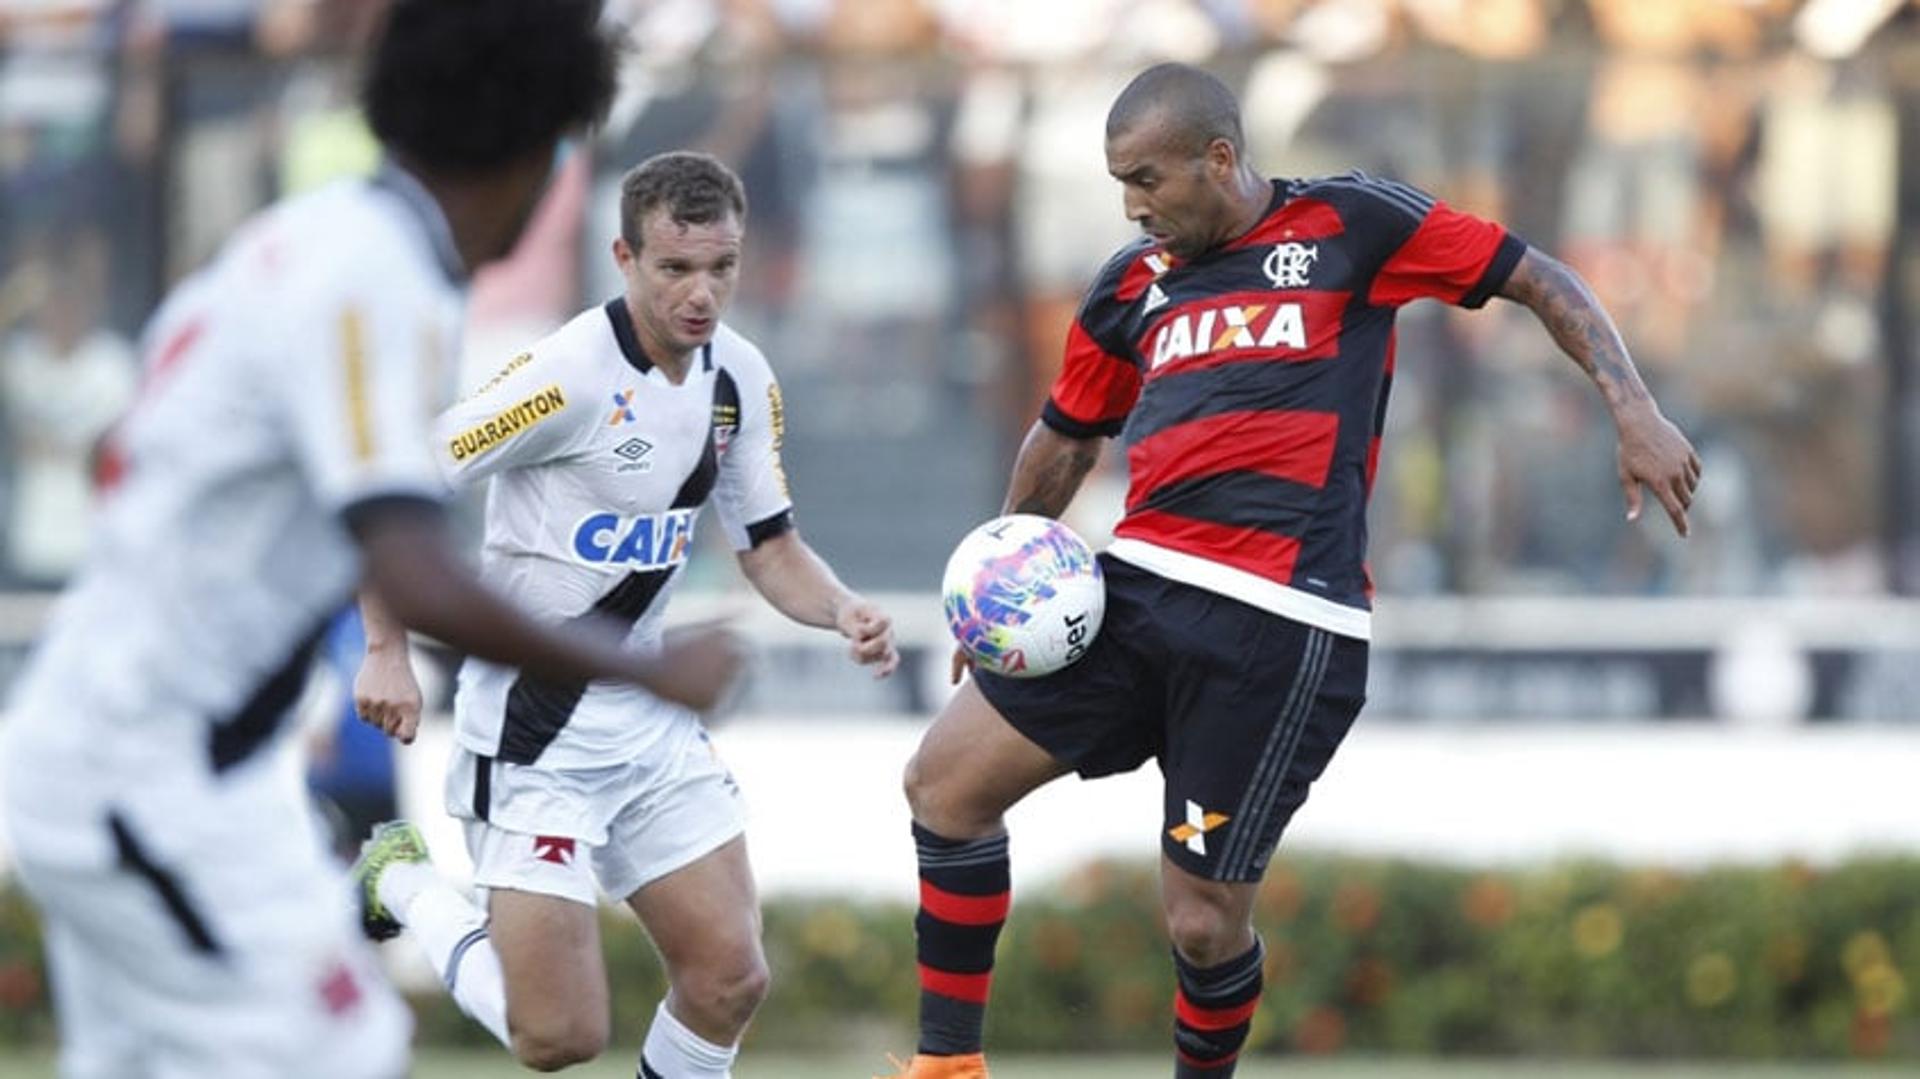 Em 14 de fevereiro de 2016, um gol de Rafael Vaz nos acréscimos decretou a vitória por 1 a 0 do Vasco sobre o Flamengo, pela Primeira Fase do Campeonato Carioca. Esta partida foi a mais recente entre as duas equipes em São Januário.